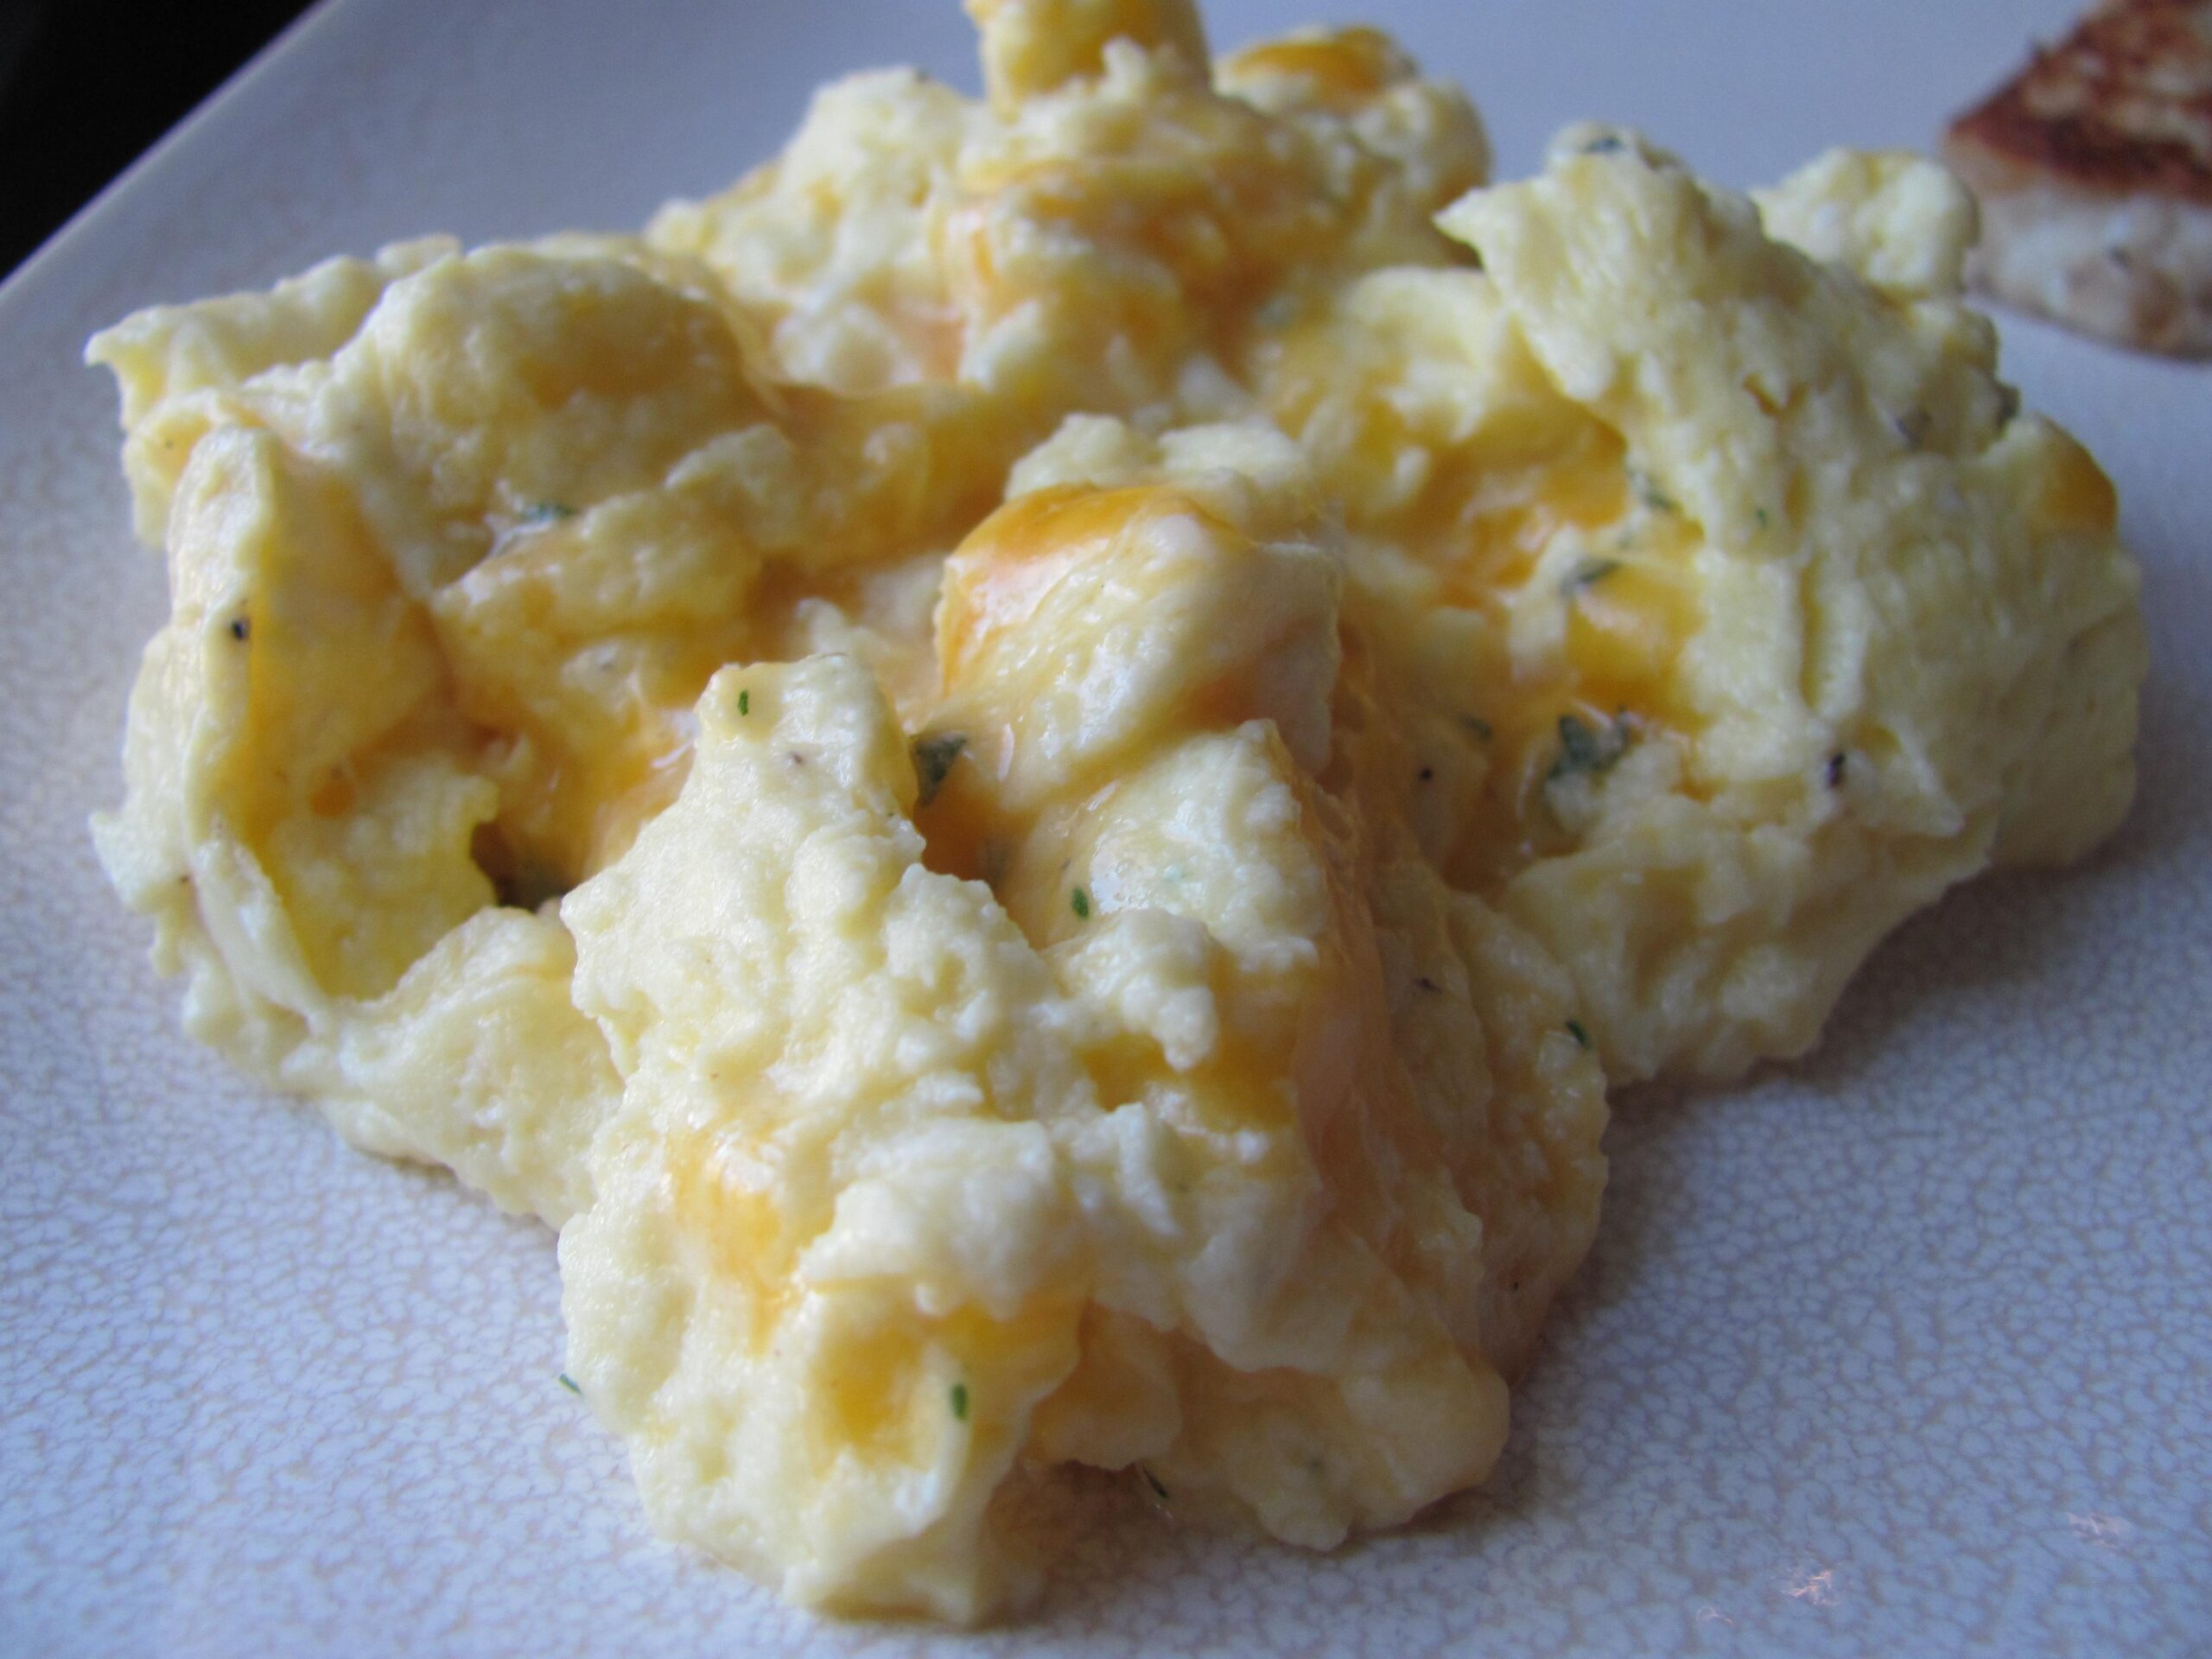 Wholesome and Delicious: Easy Irish Cheese Cream Eggs Recipe